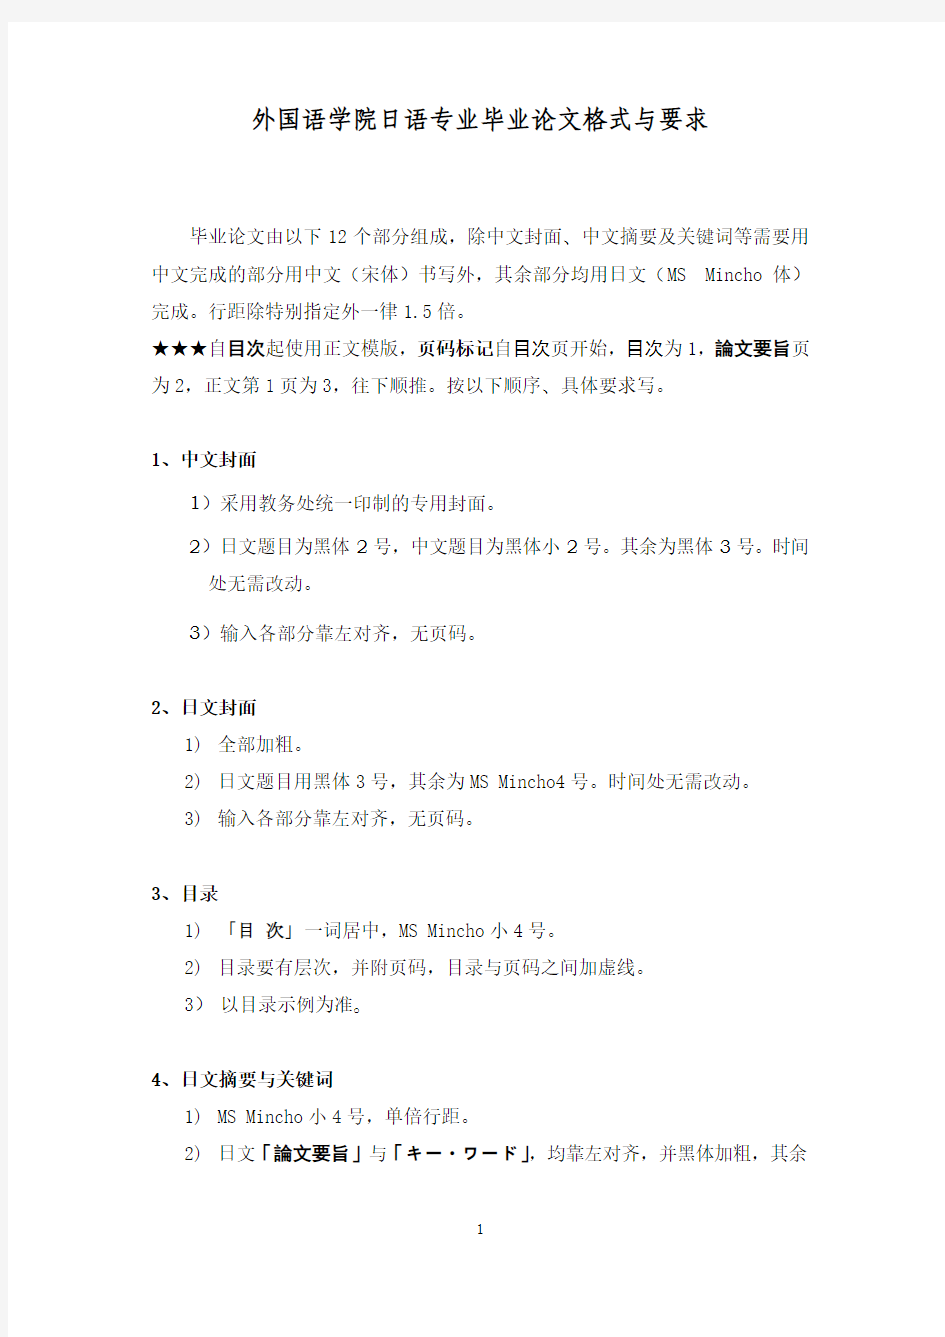 日语专业毕业论文格式与要求-2012版